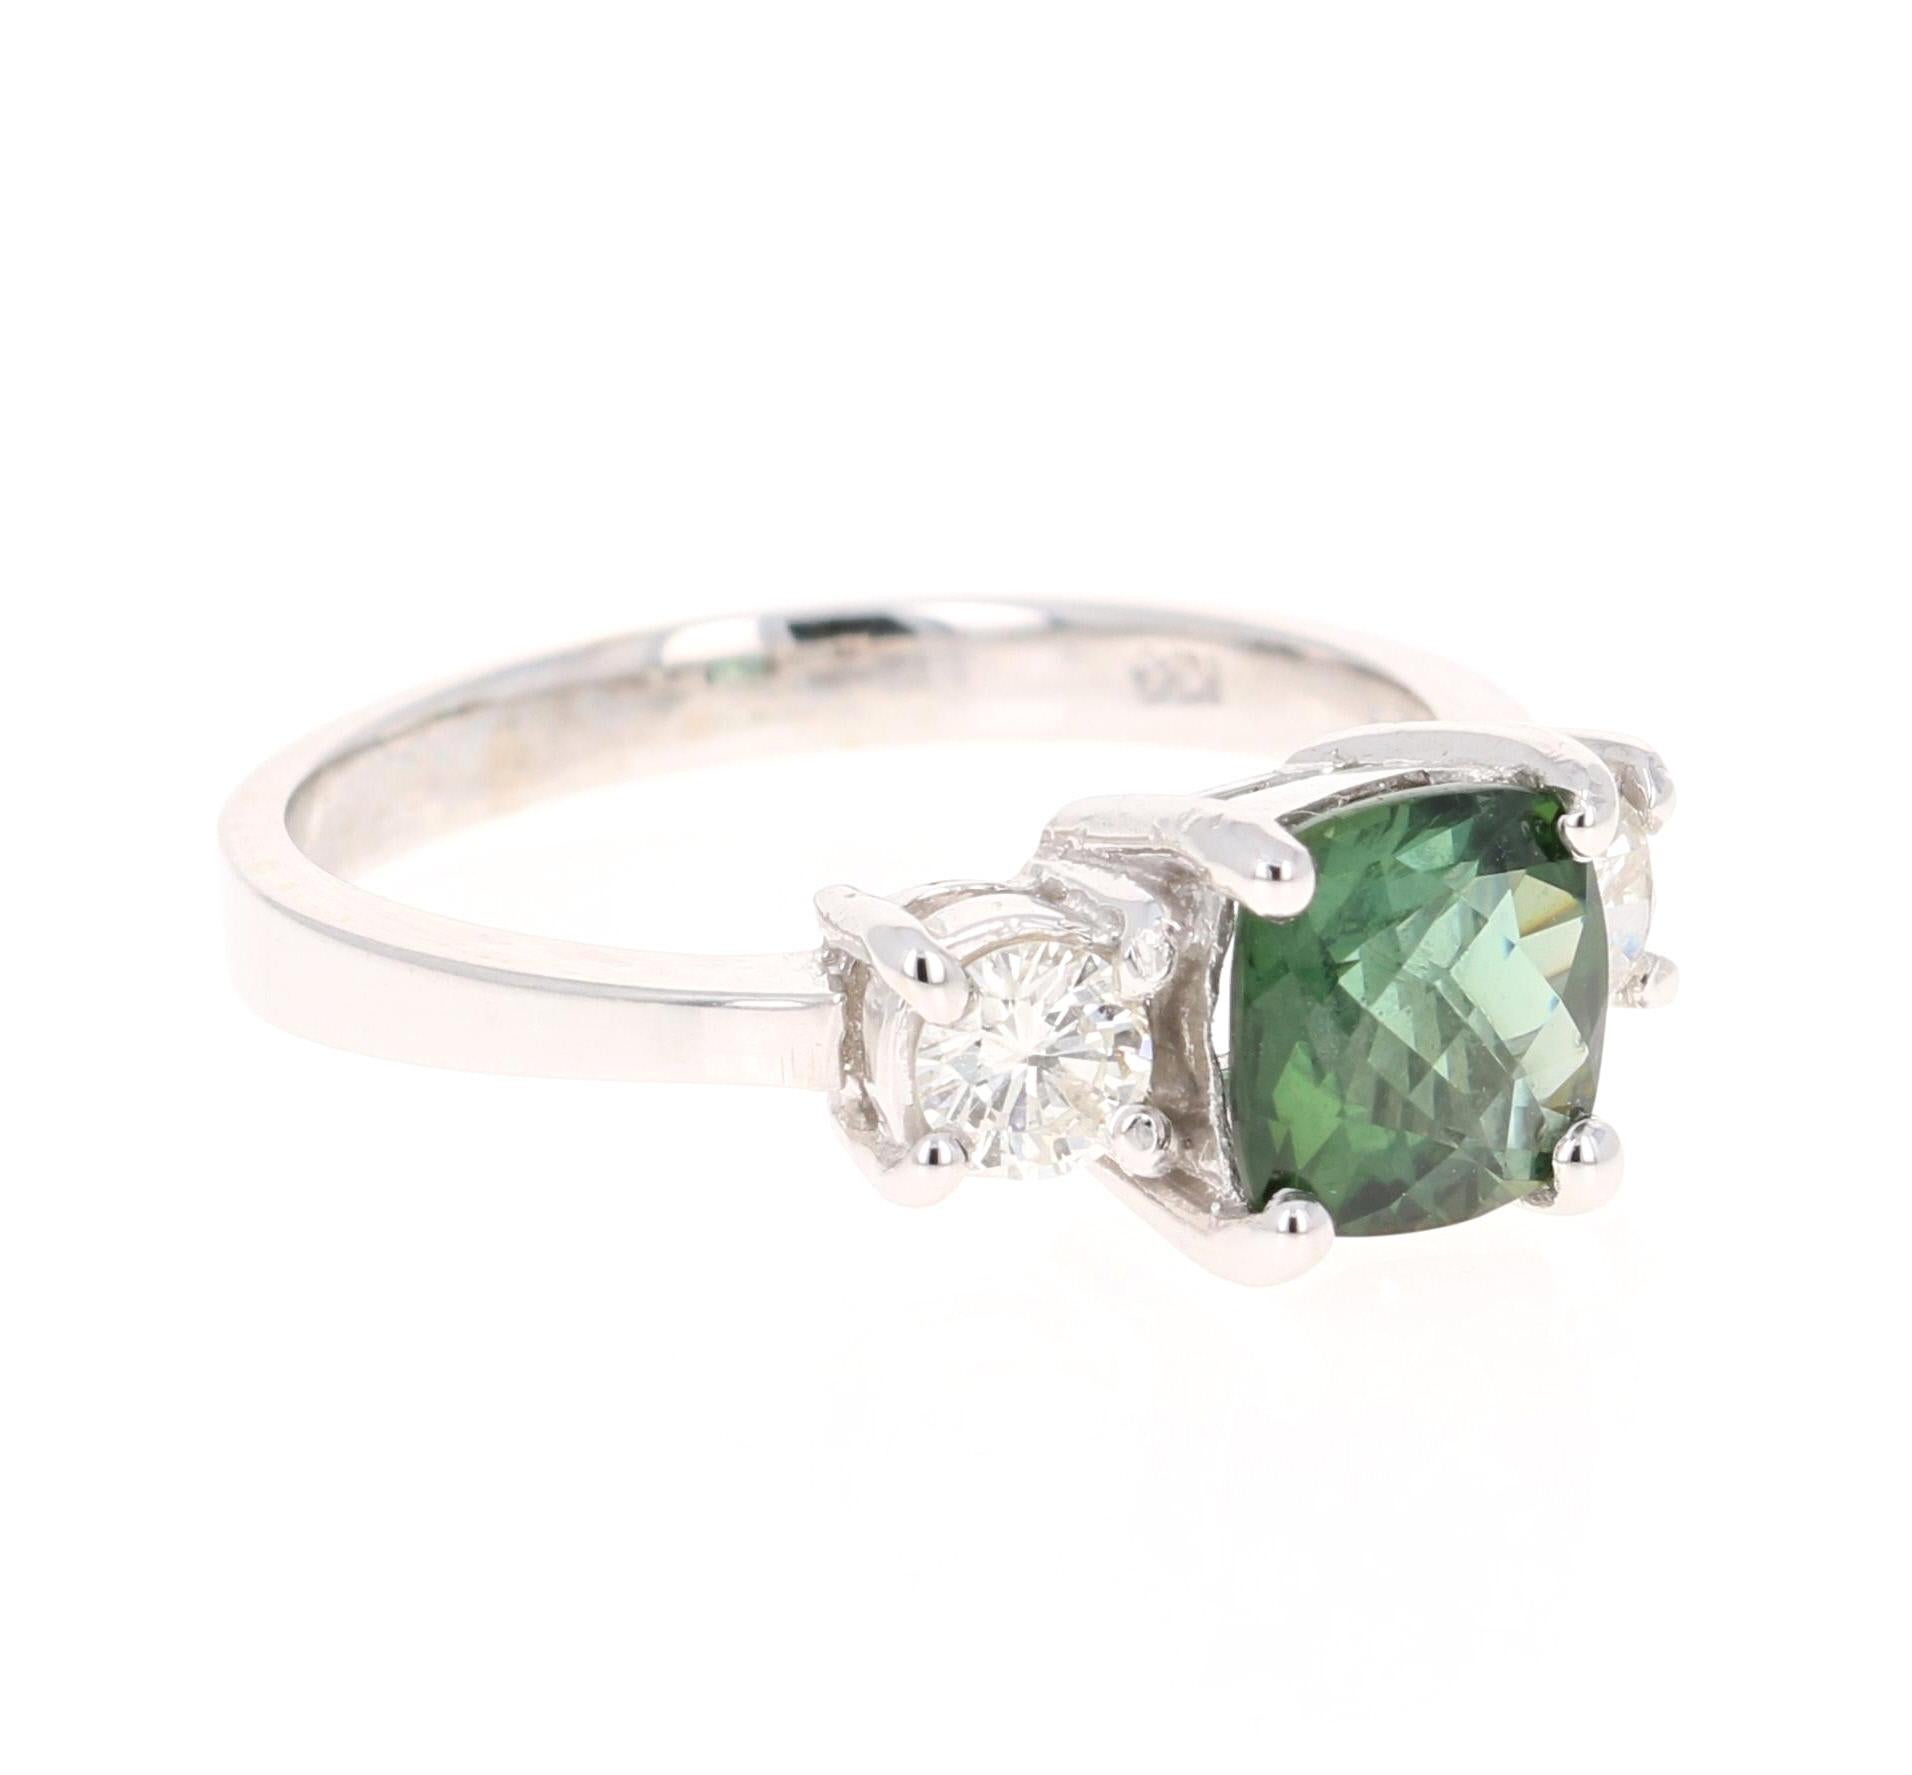 Dieser Ring hat einen faszinierenden grünen Turmalin im Kissenschliff mit einem Gewicht von 1,42 Karat und 2 Diamanten im Rundschliff mit einem Gewicht von 0,38 Karat. Das Gesamtkaratgewicht des Rings beträgt 1,80 Karat. 

Er ist in 14K Weißgold